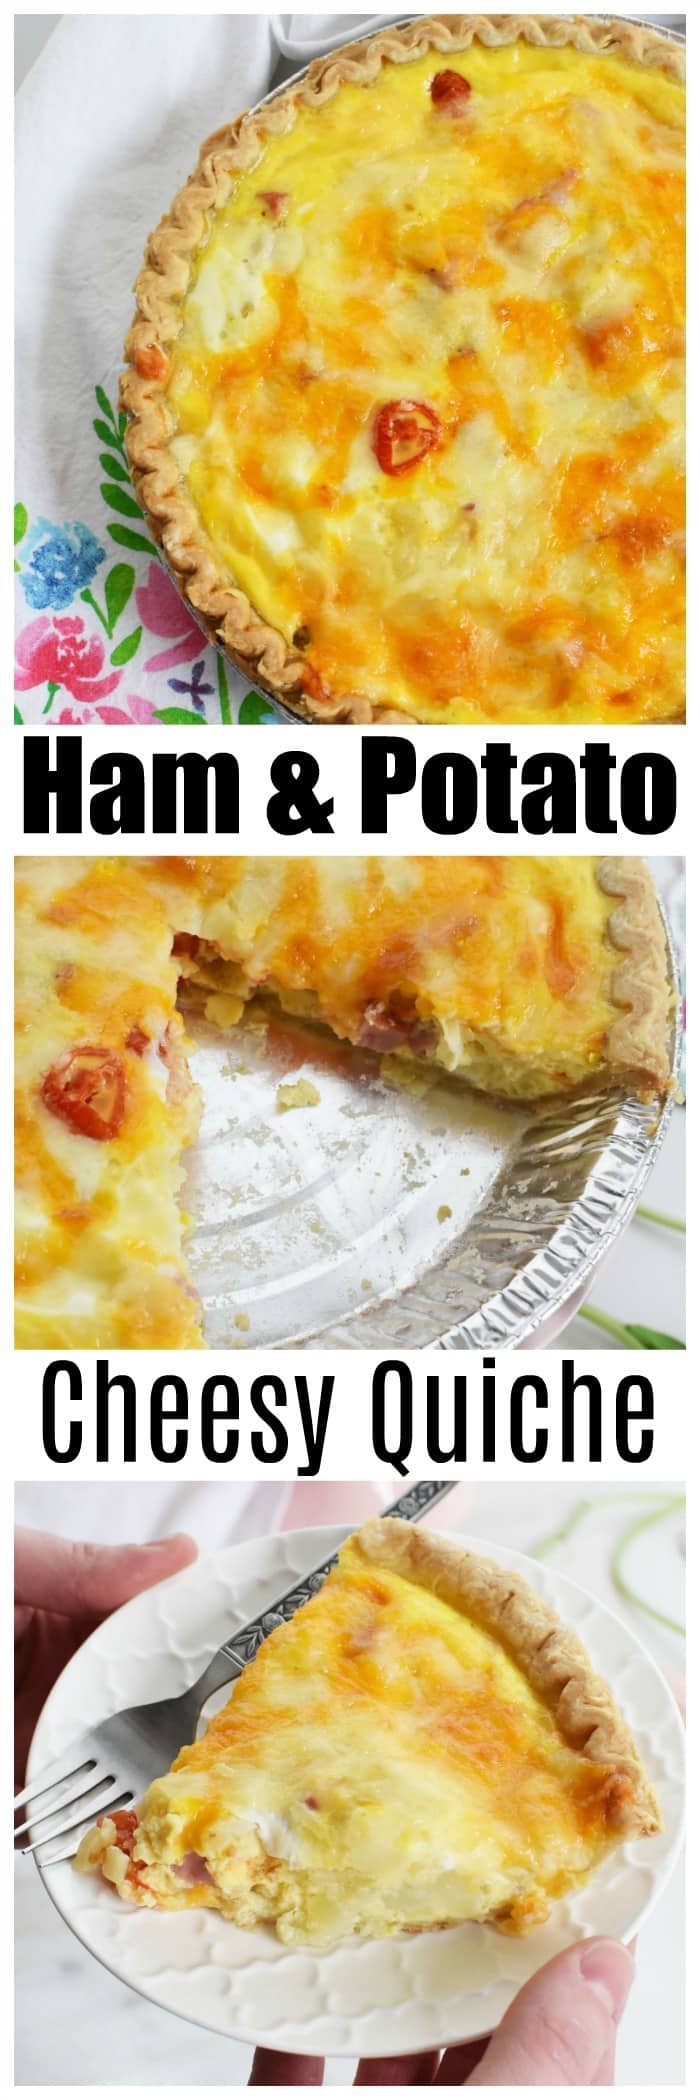 Ham & Potato Cheesy Quiche Recipe